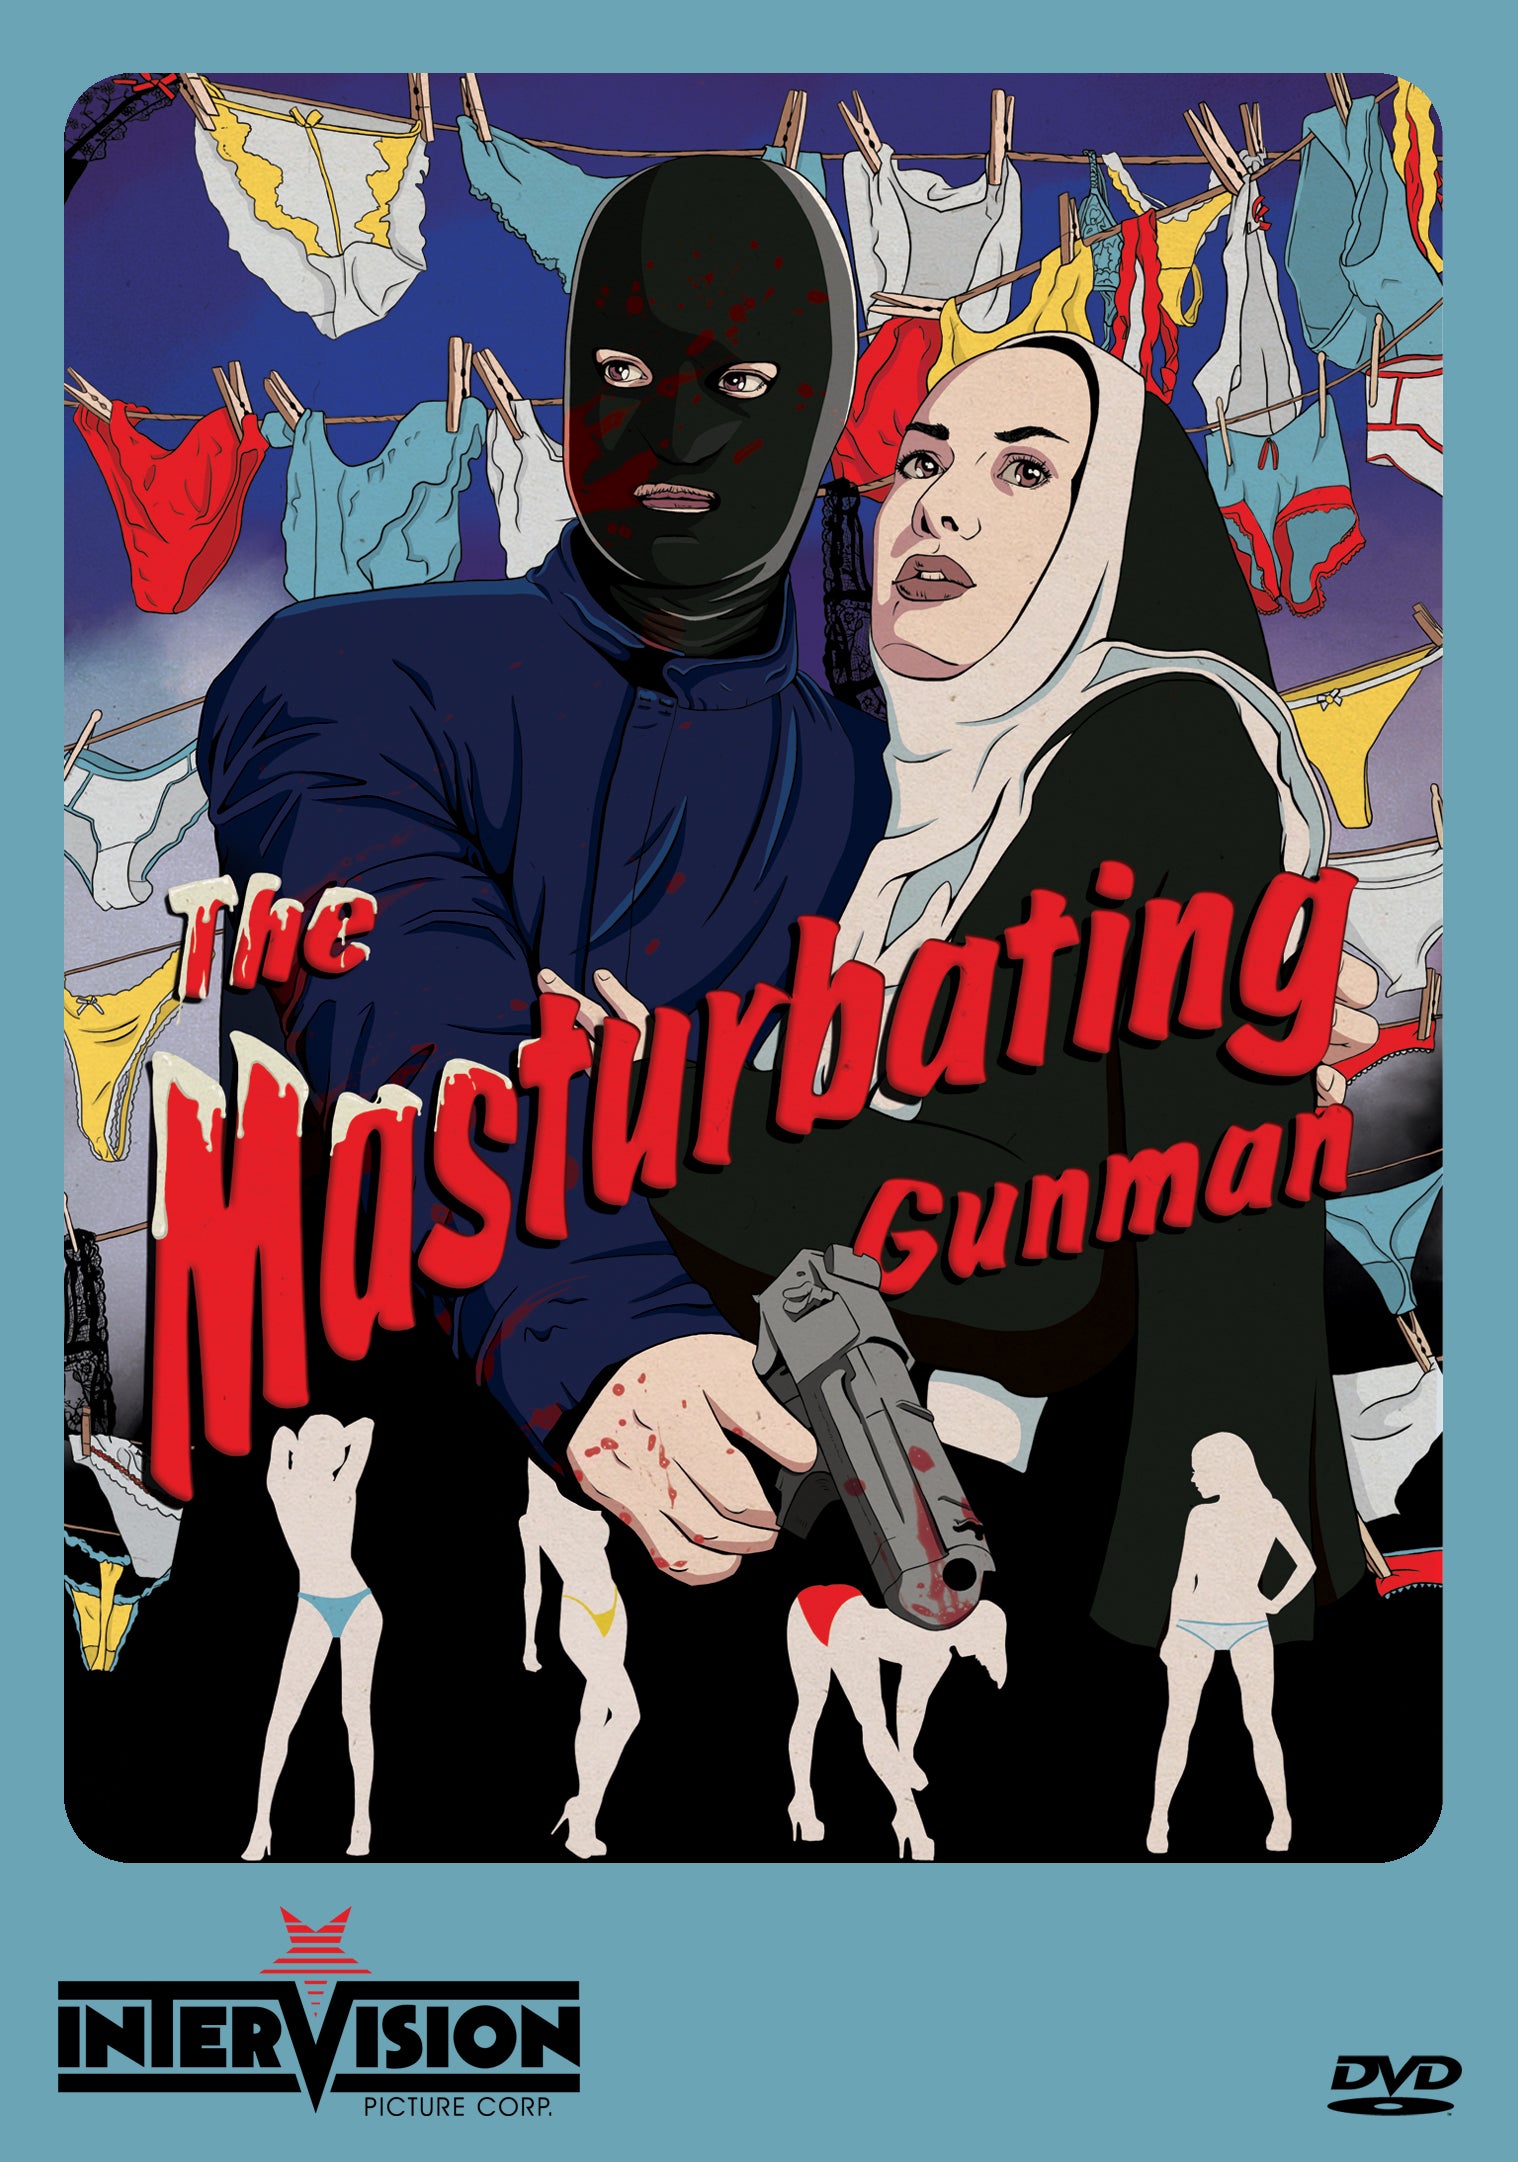 THE MASTURBATING GUNMAN DVD